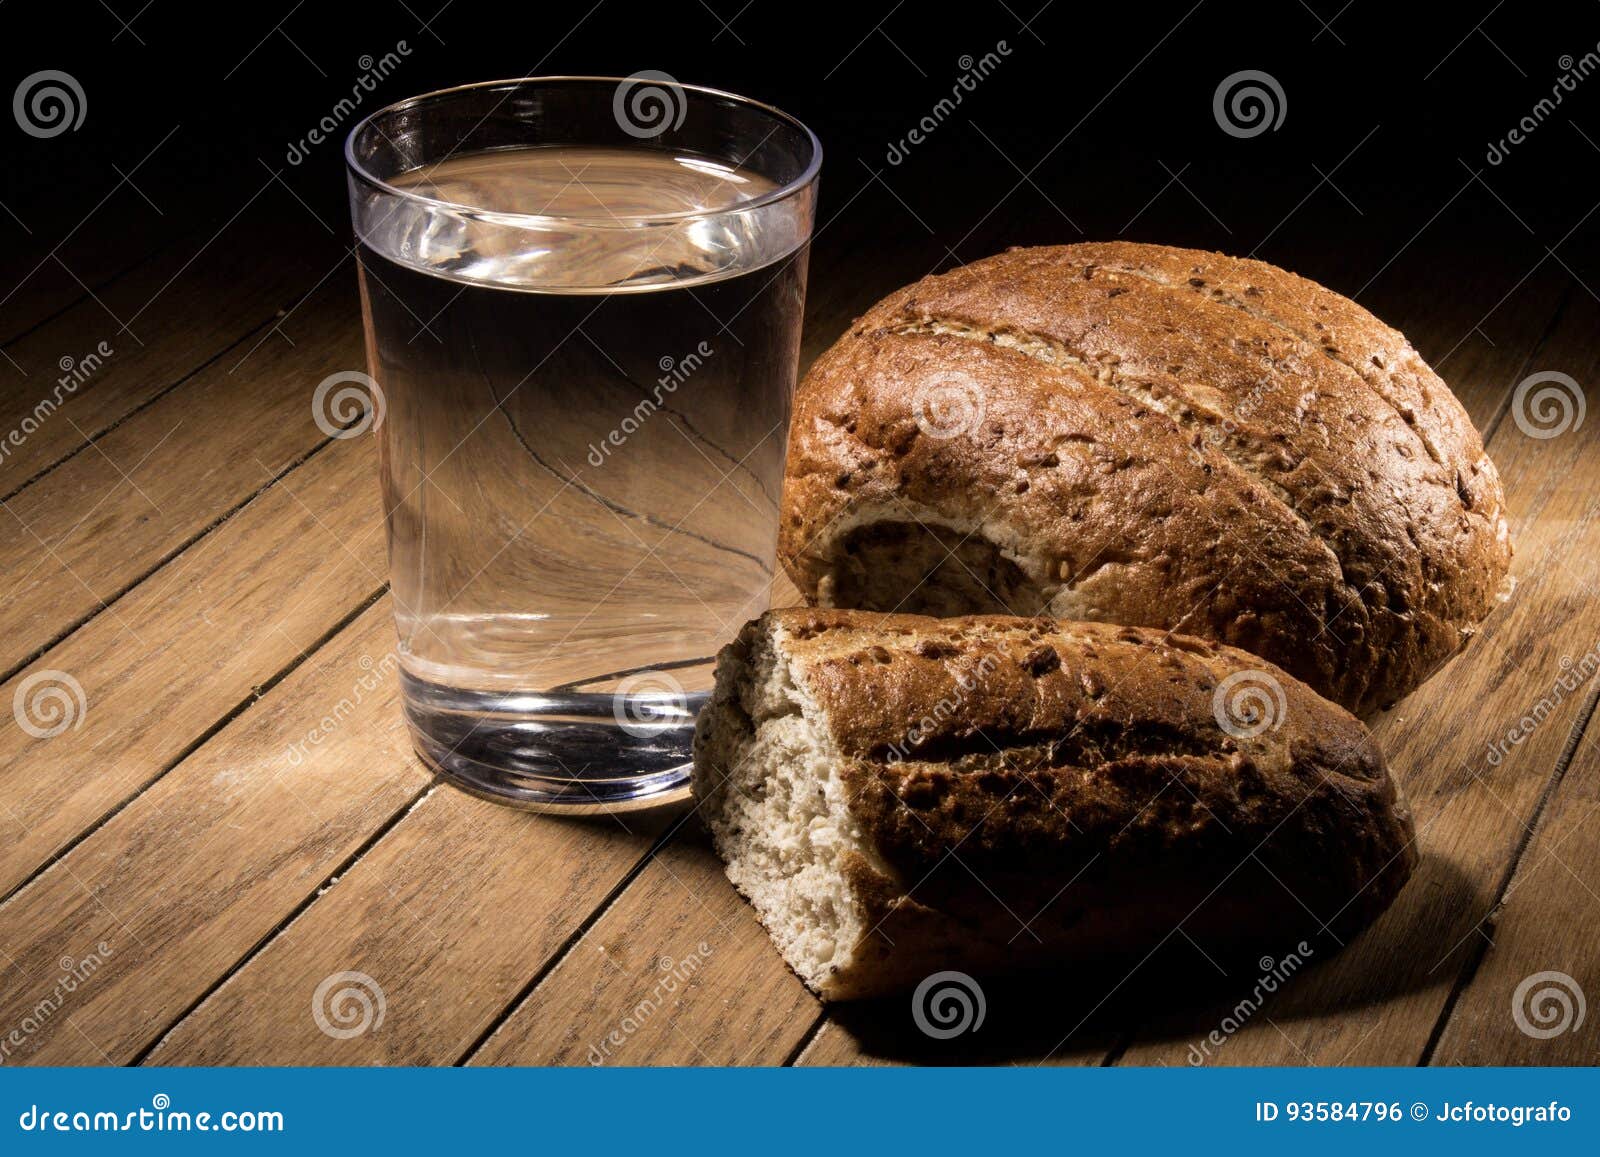 Воды и хлеба дай